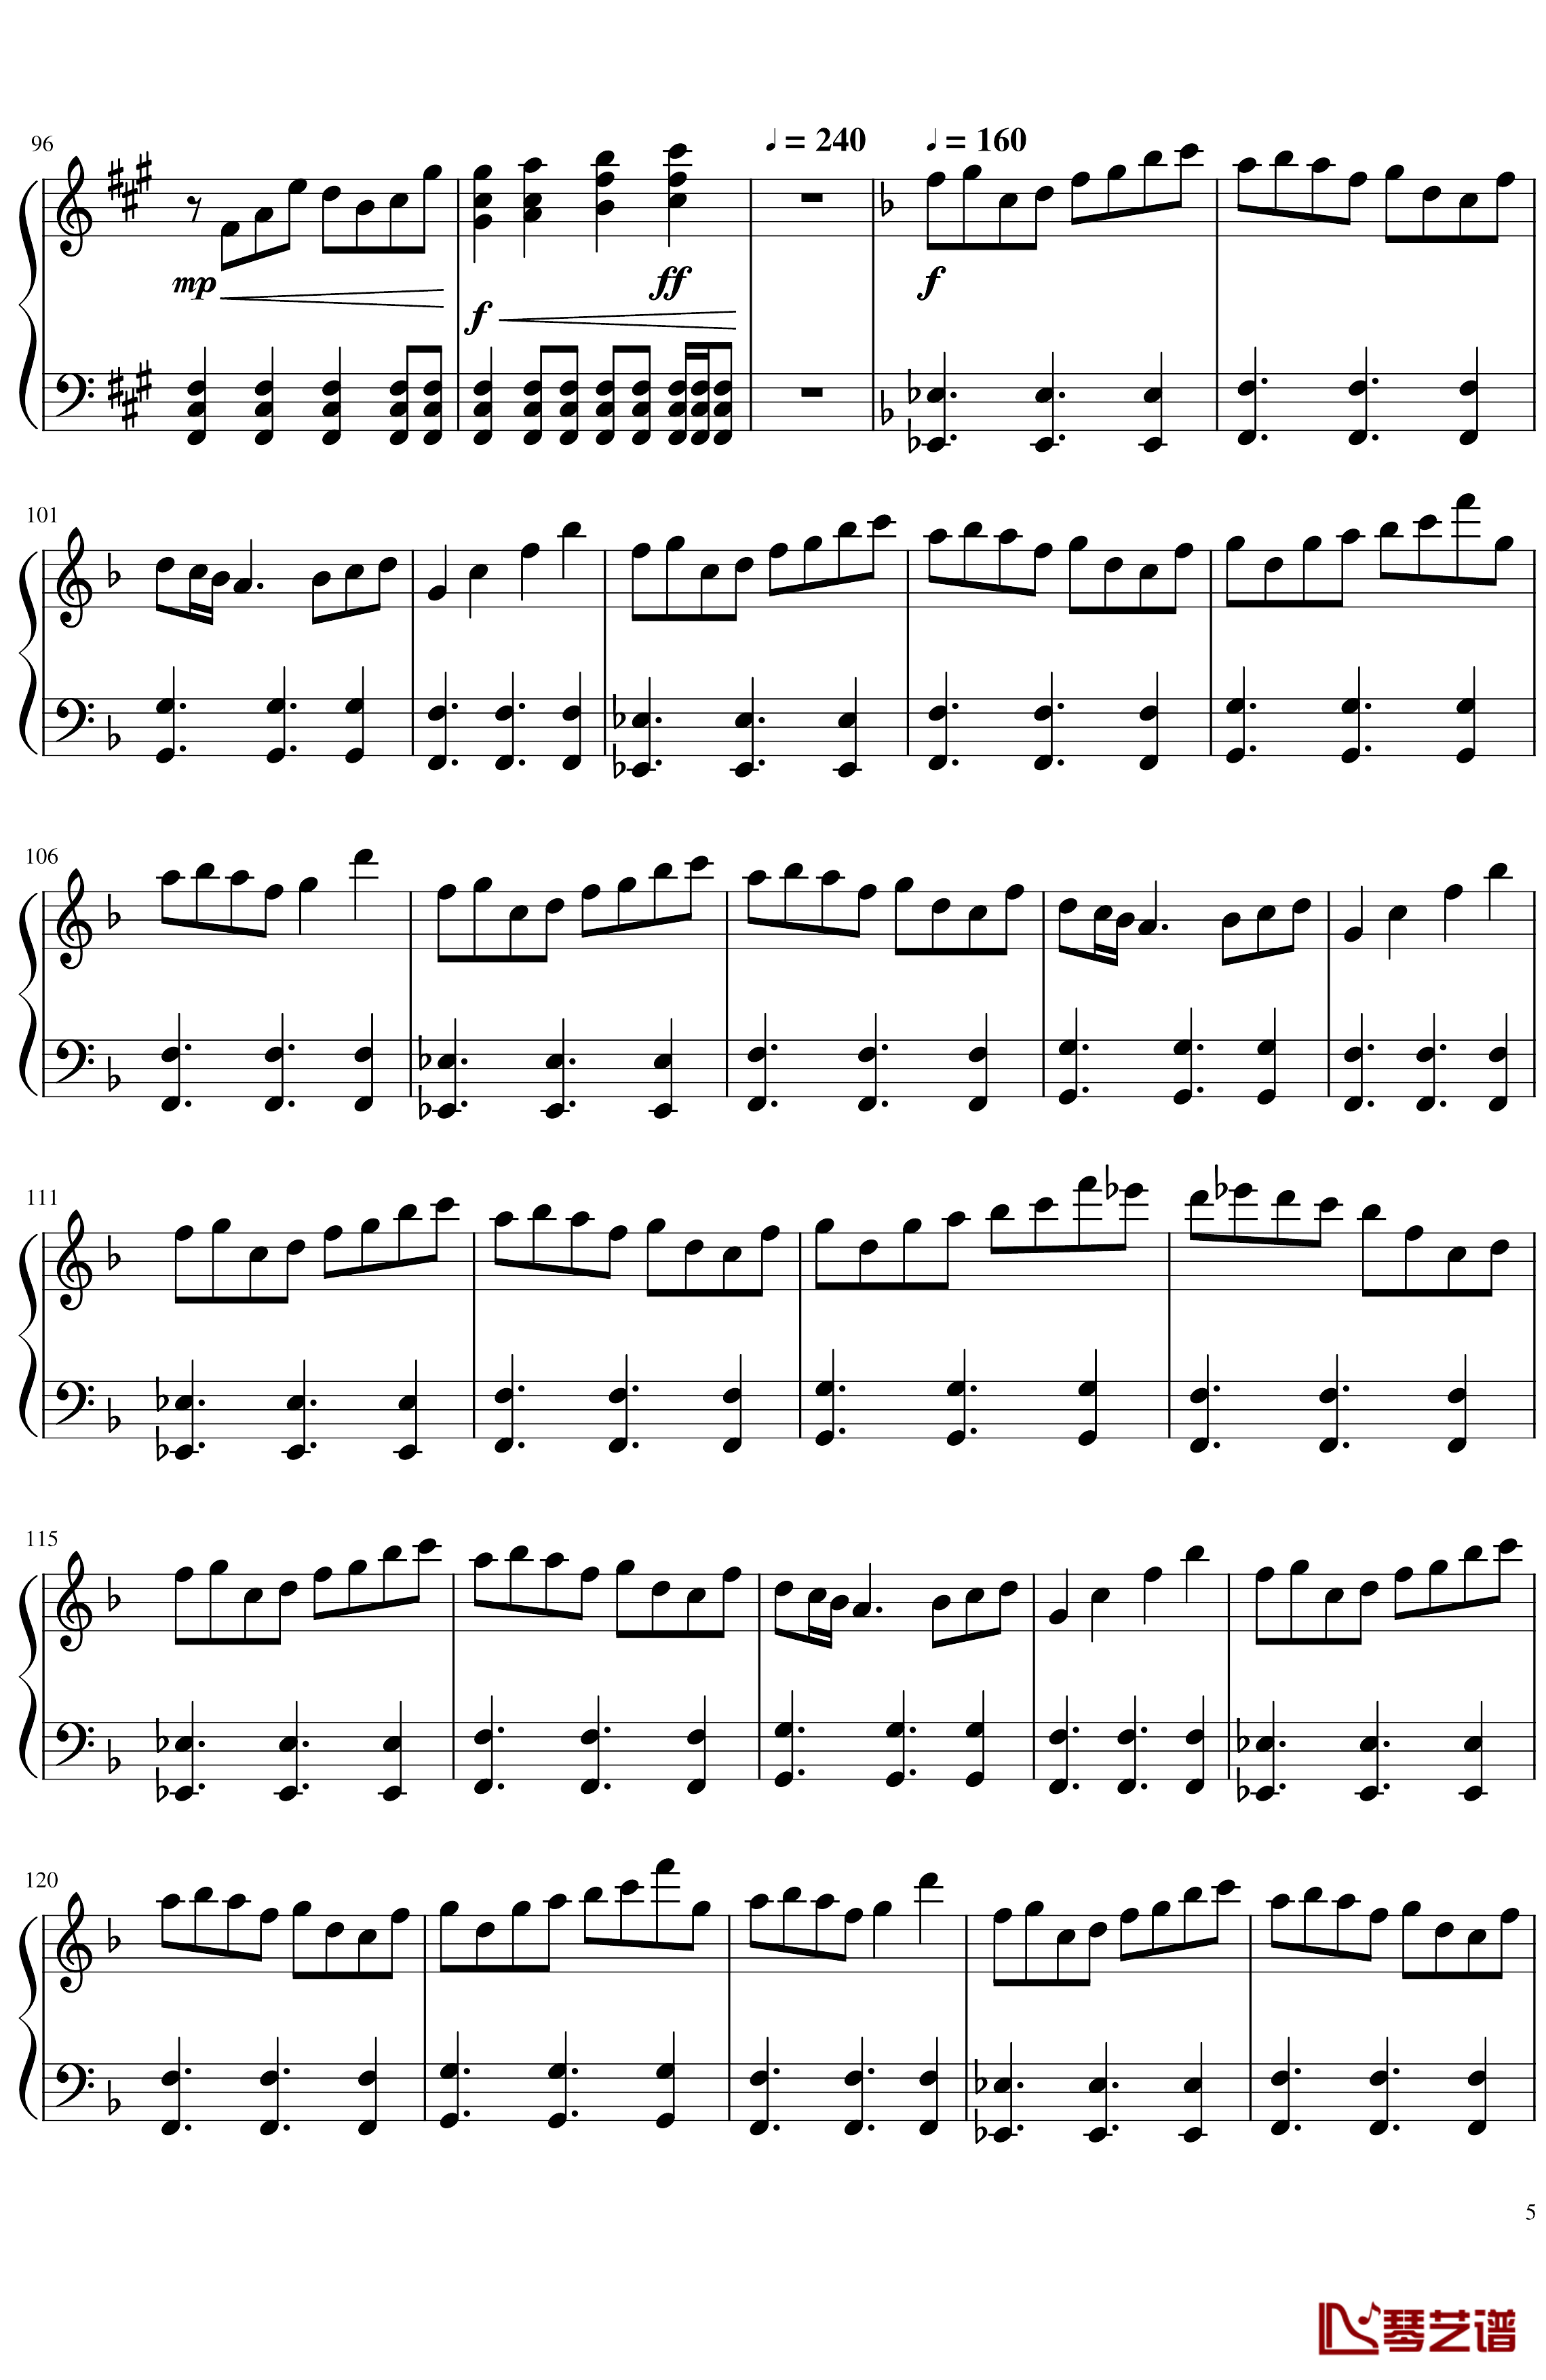 ソロモンの白椿钢琴谱-交响乐转钢琴版-碧蓝航线5